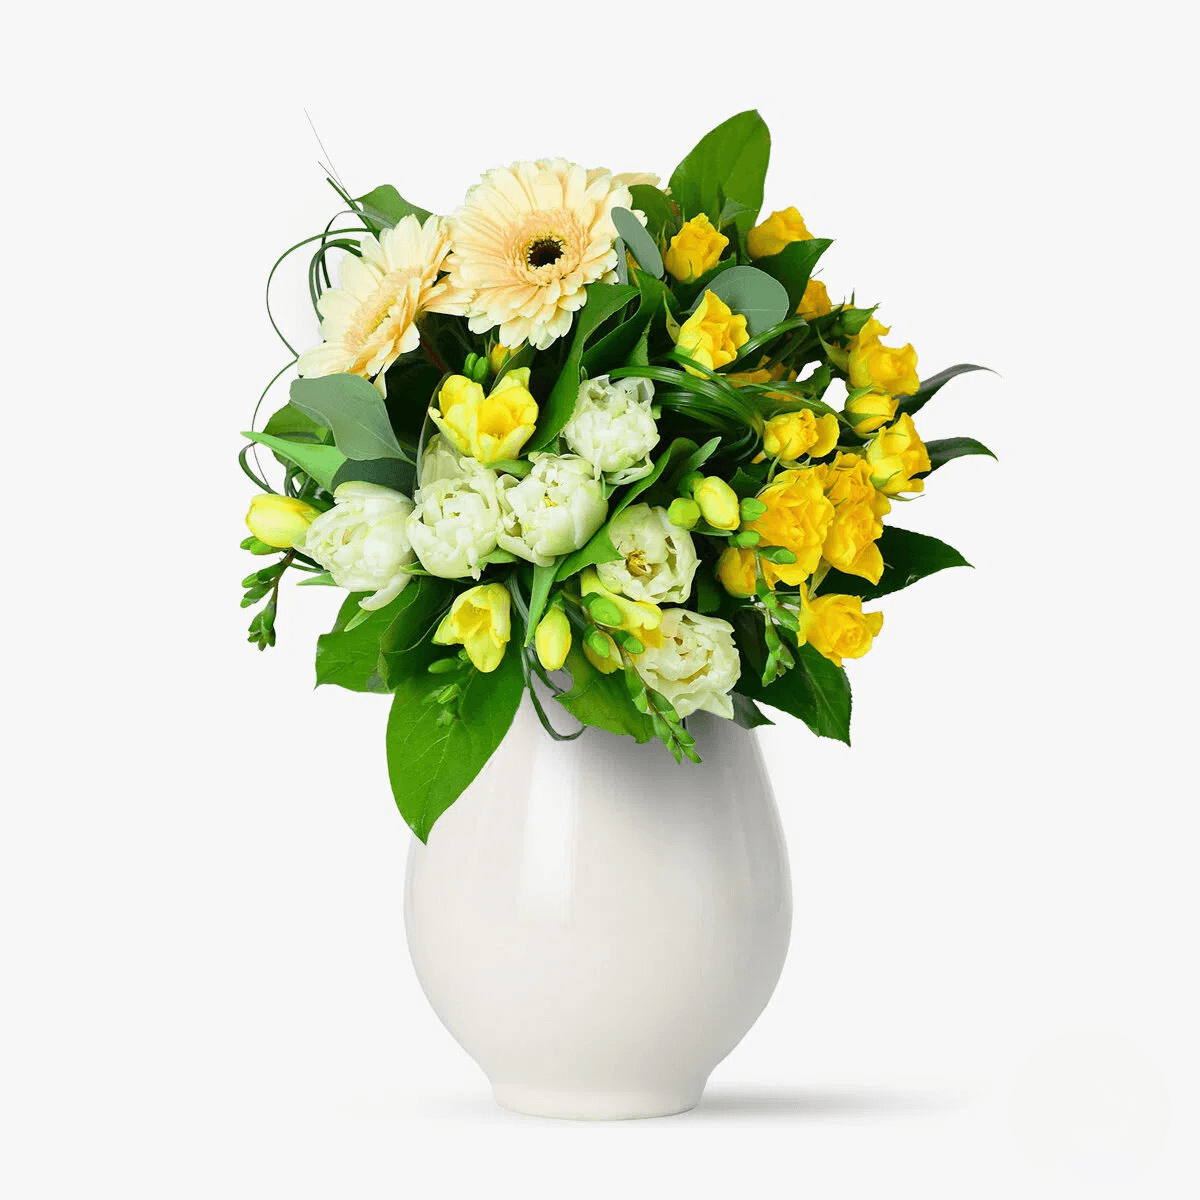 Flori si soare – Premium Flori imagine 2022